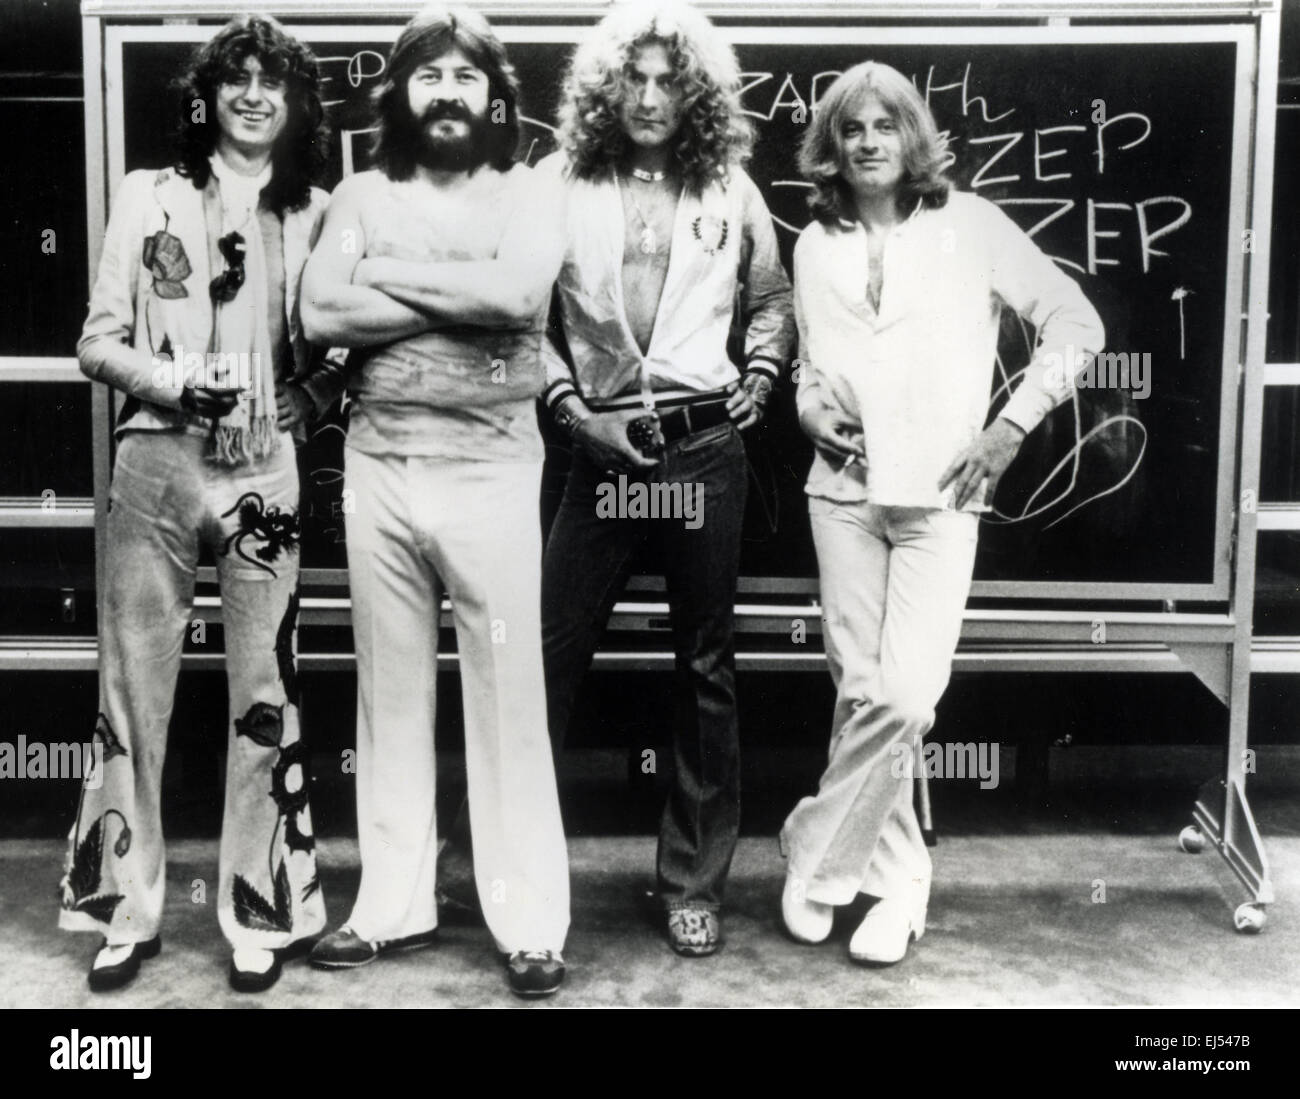 Led Zeppelin disco de vinilo & etiqueta - Led Zeppelin III álbum Fotografía  de stock - Alamy